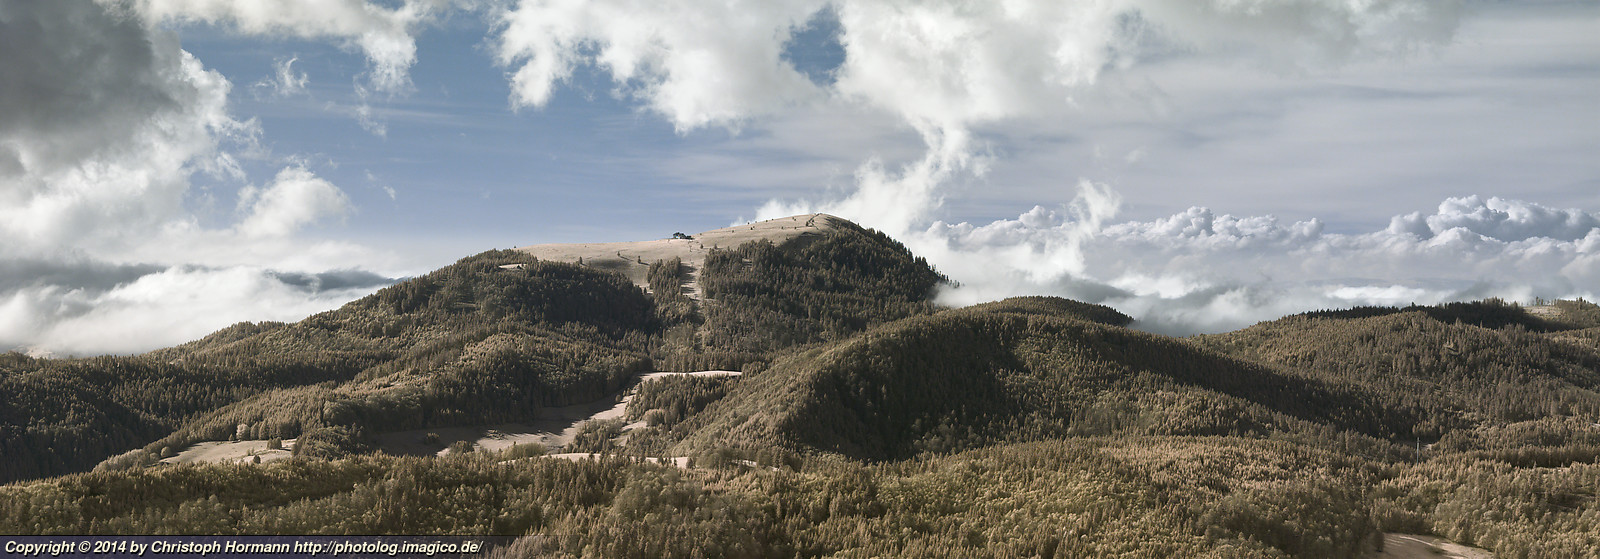 Bild 112: Der belchen vom Herzogenhorn im Südschwarzwald, infrarot